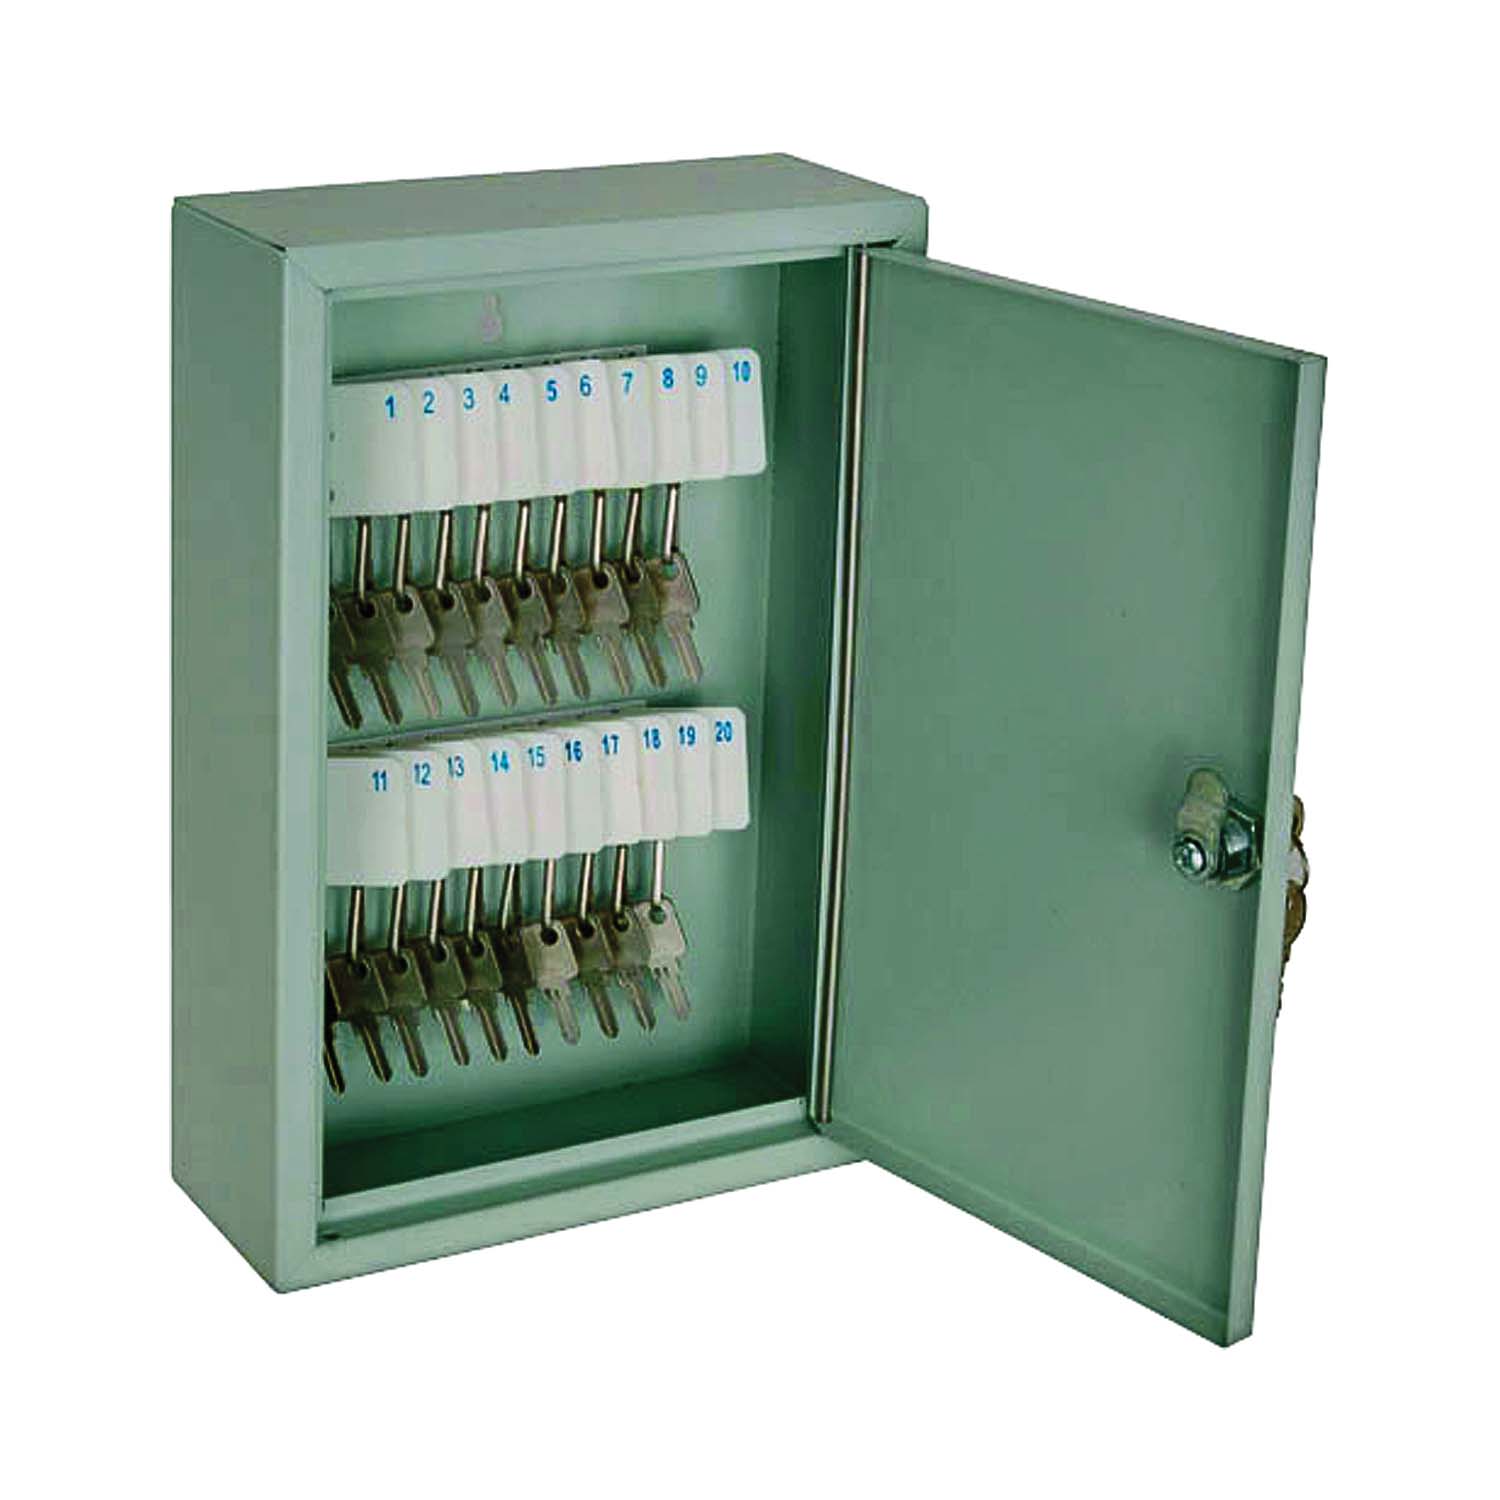 TS821 Key Box, Keyed Lock, Steel, Light Gray, 7.875 in W, 11.75 in H, 3.125 in D